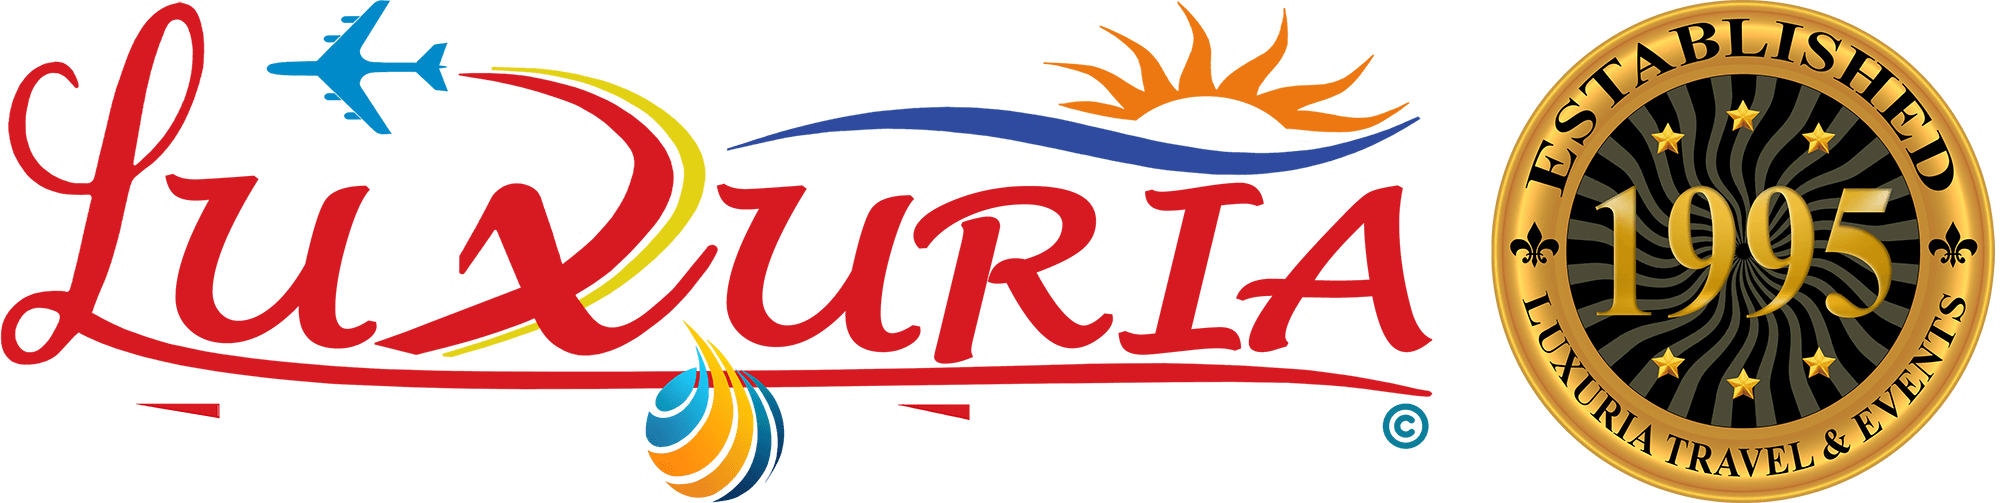 Luxuria Travel & Events | “هامبورغ” ترحب بالمسافرين بتجارب رقمية جديدة لجميع أفراد العائلة ⋆ Luxuria Travel & Events